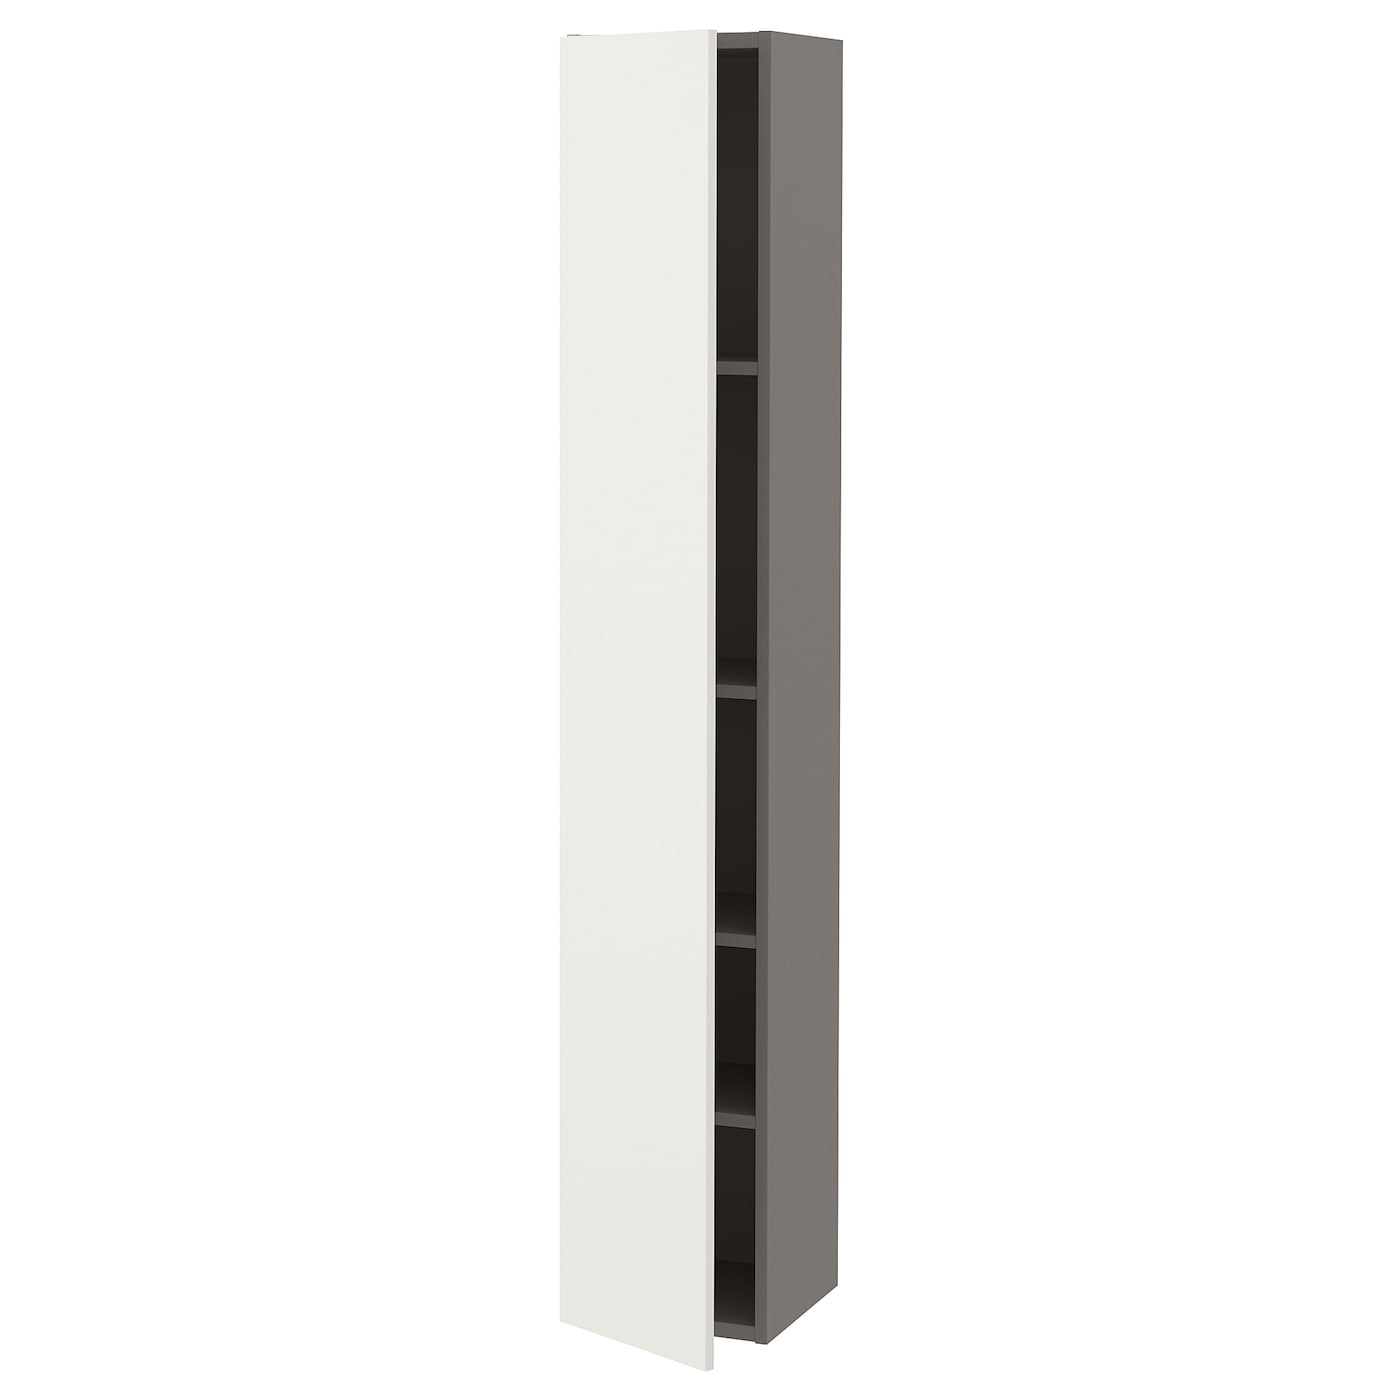 Высокий шкаф с дверцами - IKEA ENHET, серый/белый, 30х32х180 см, ЭНХЕТ ИКЕА